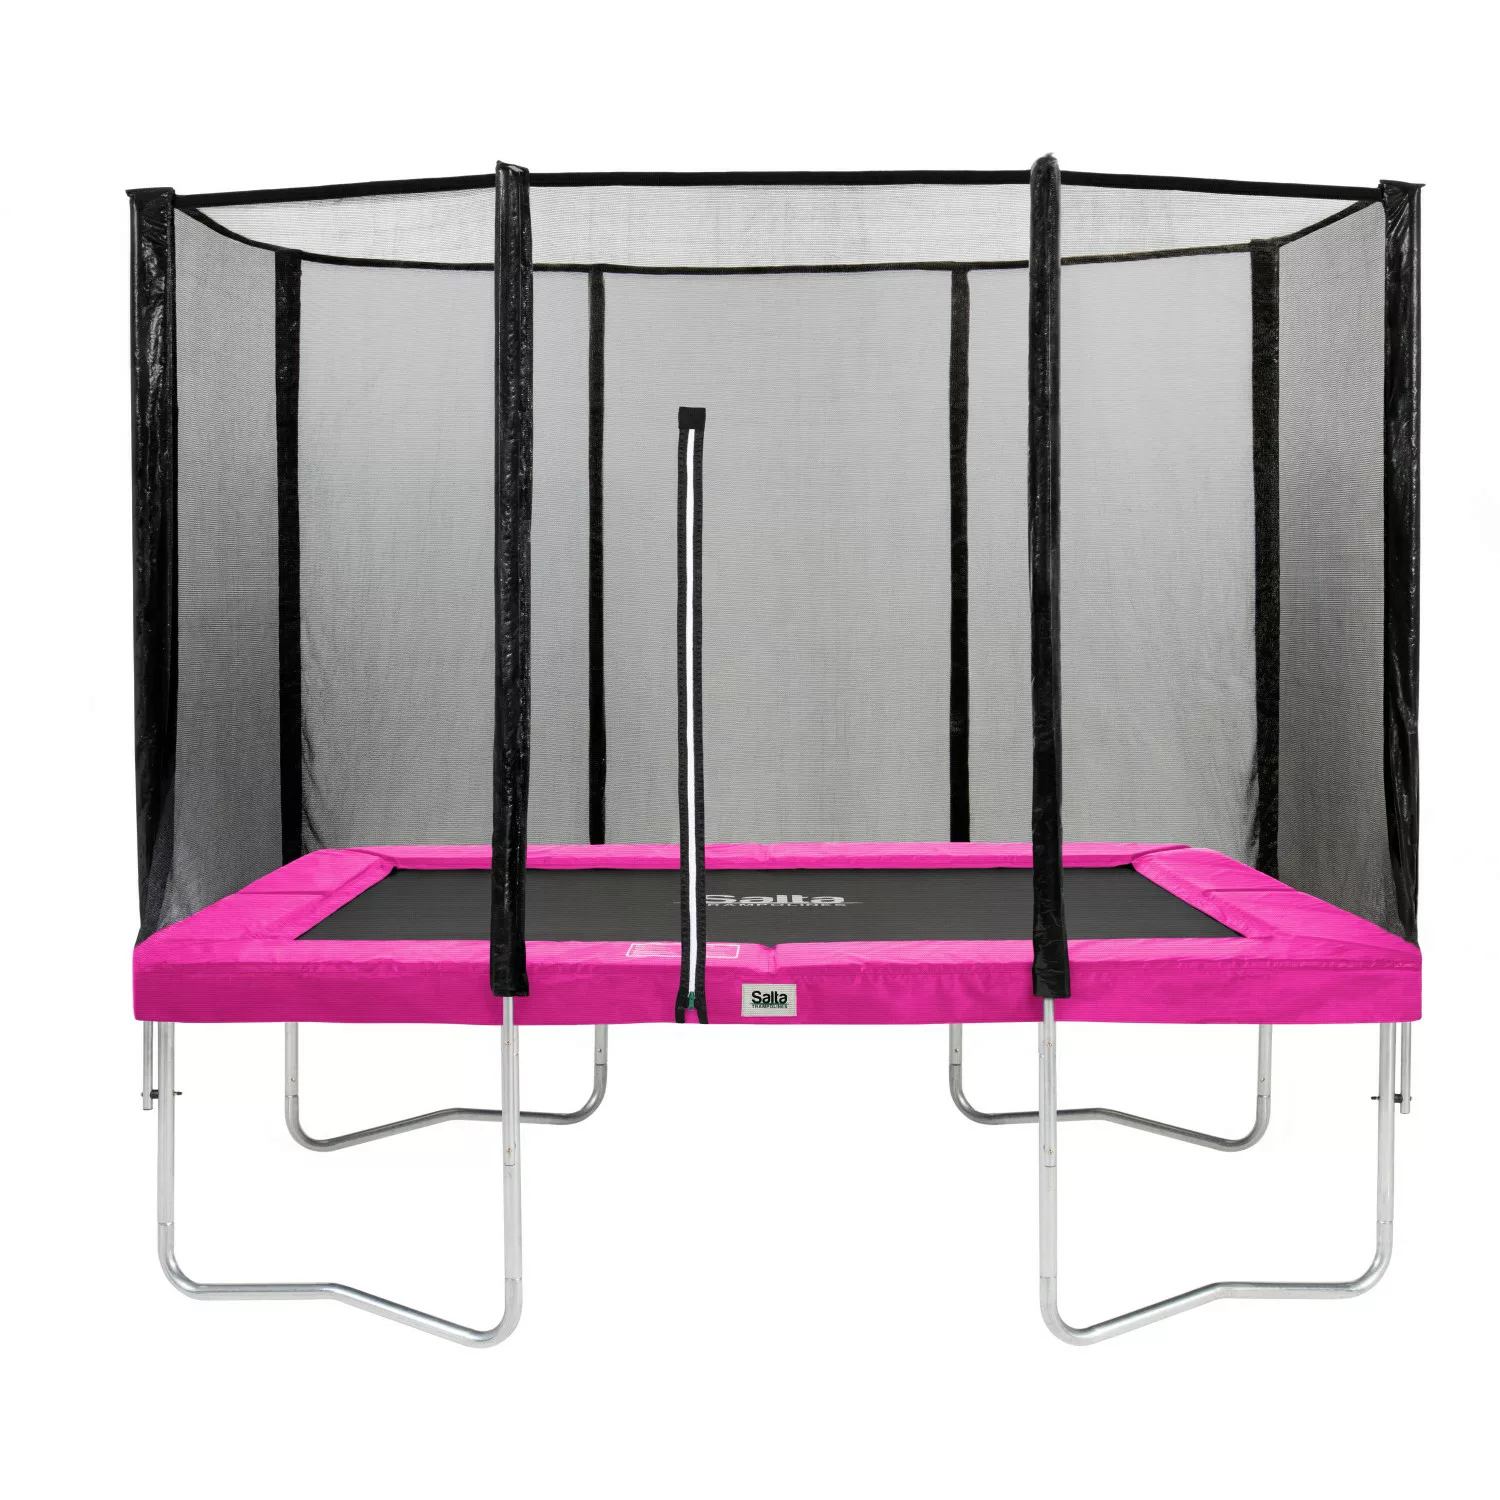 Salta Trampolin Combo 305 x 214 cm Pink günstig online kaufen